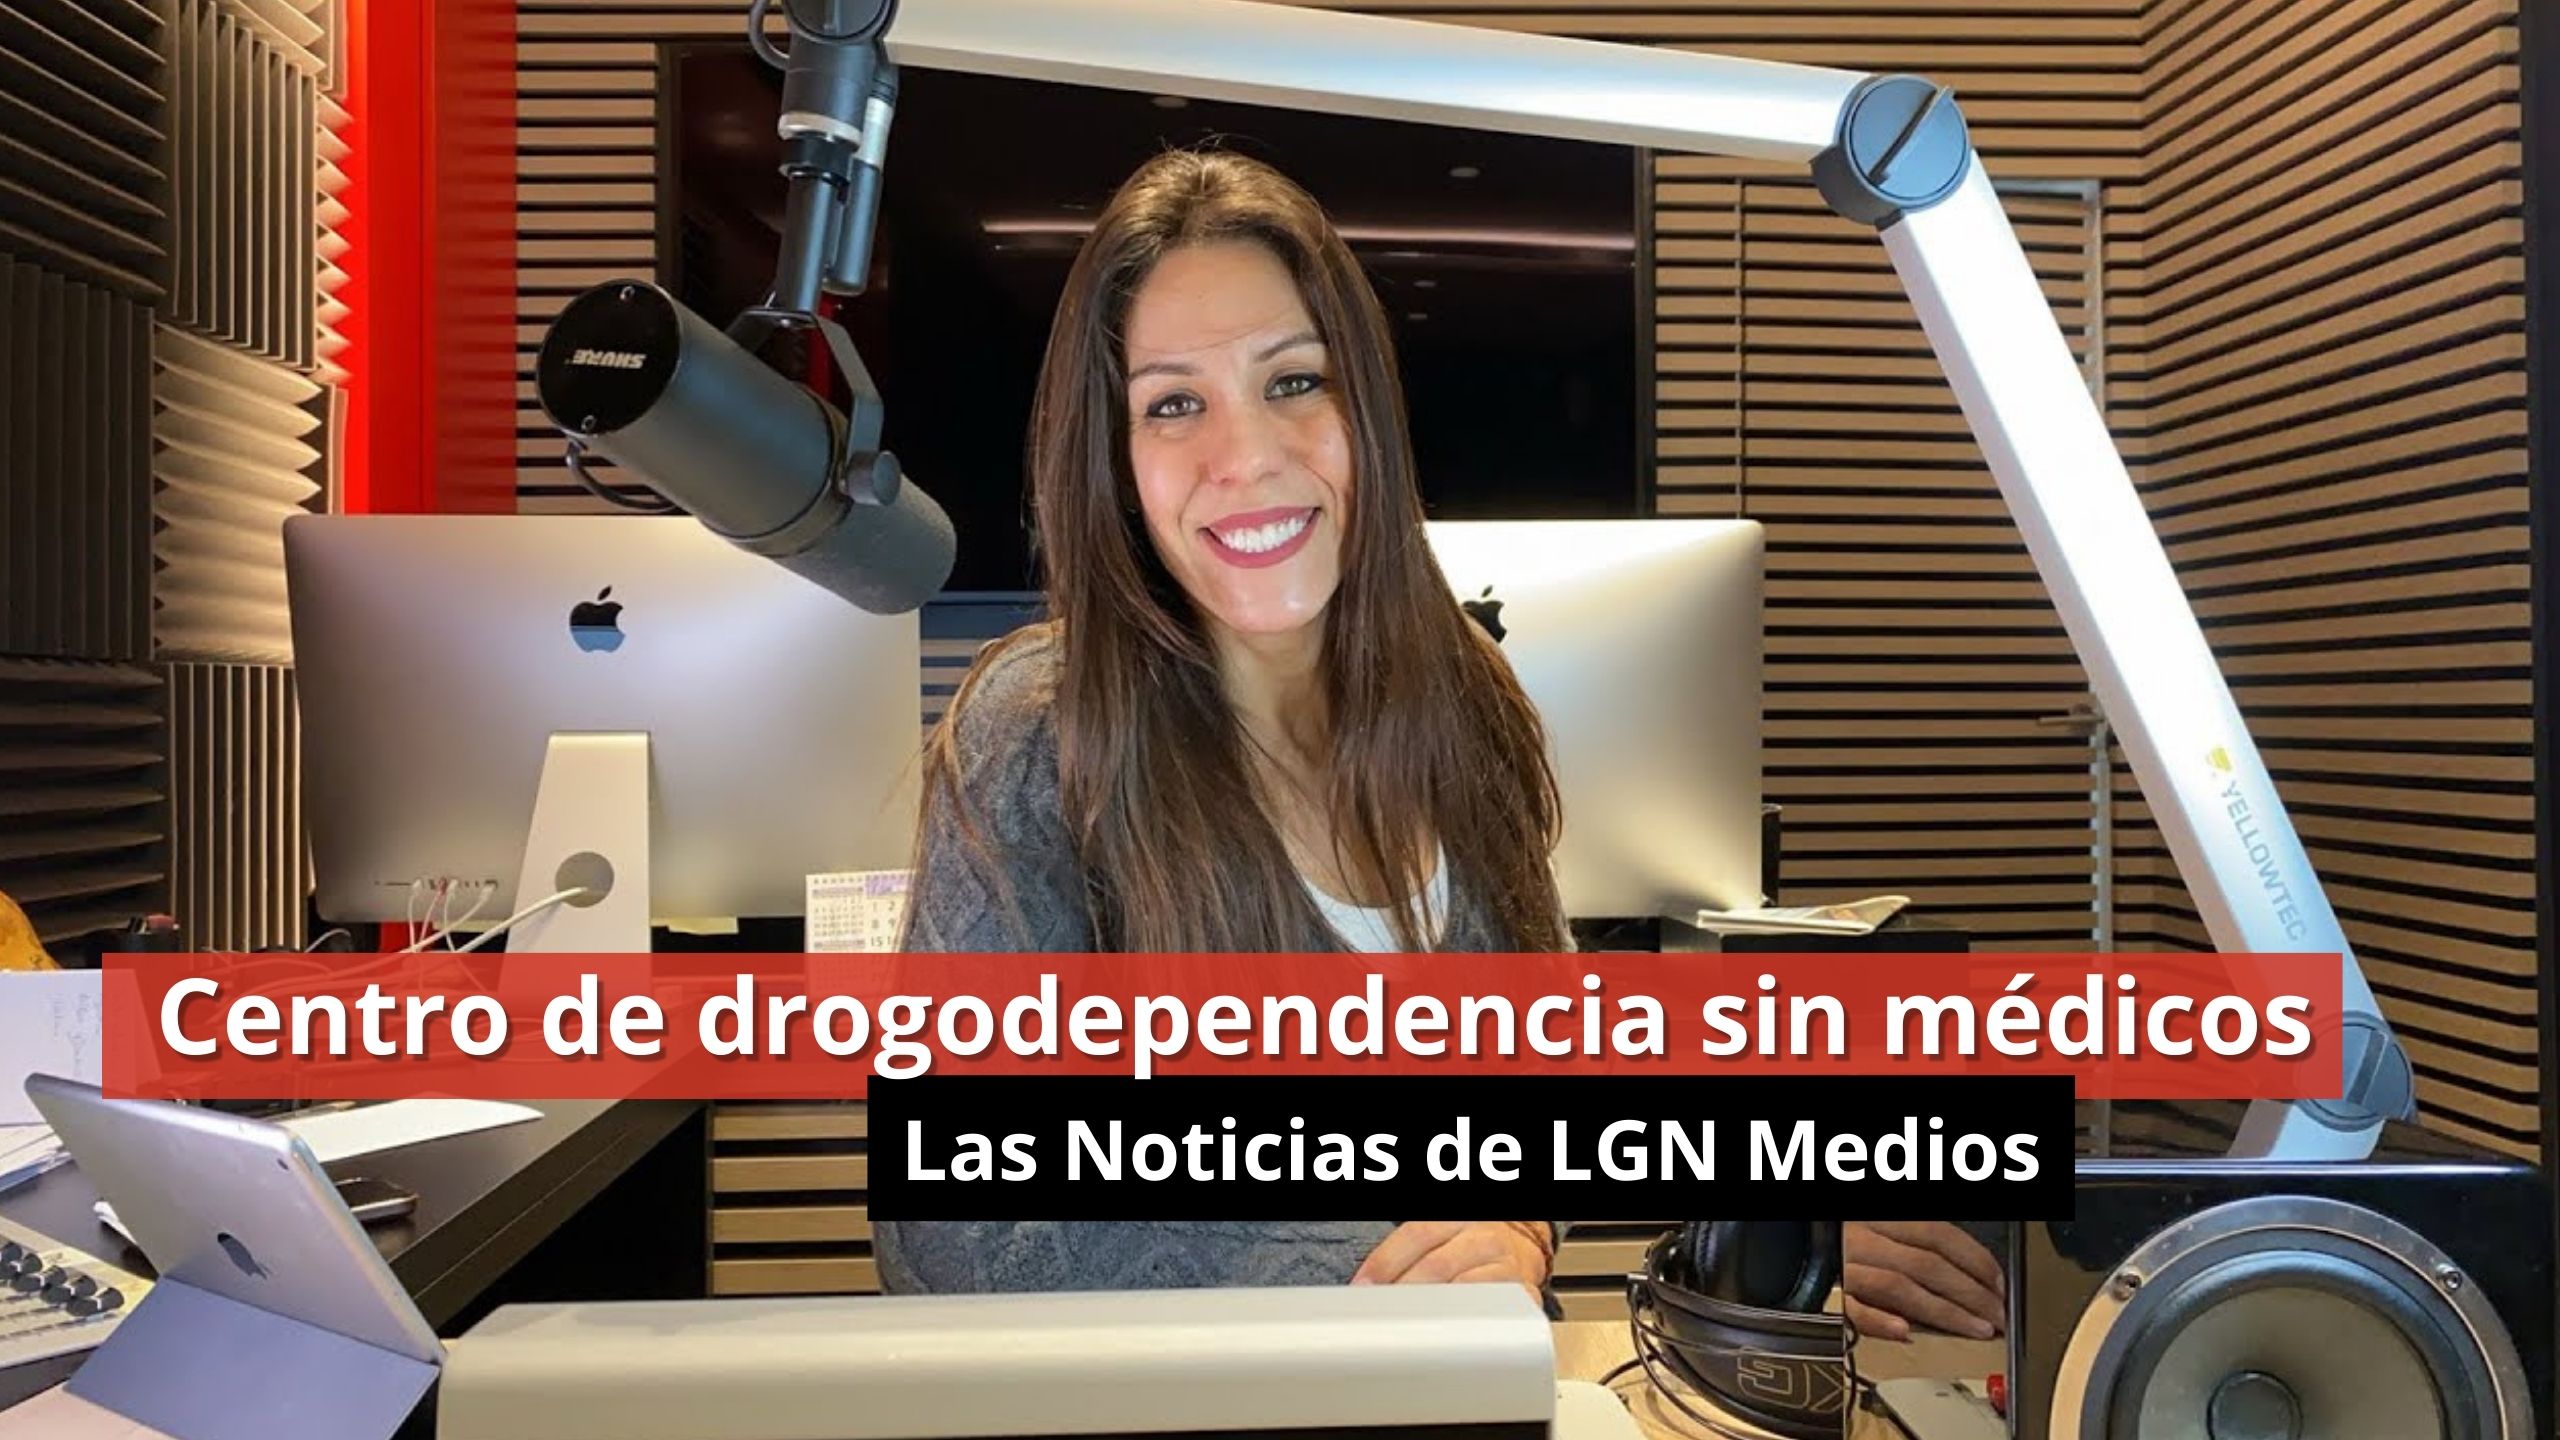 Centro de drogodependencia sin médicos - Las Noticias de LGN Medios